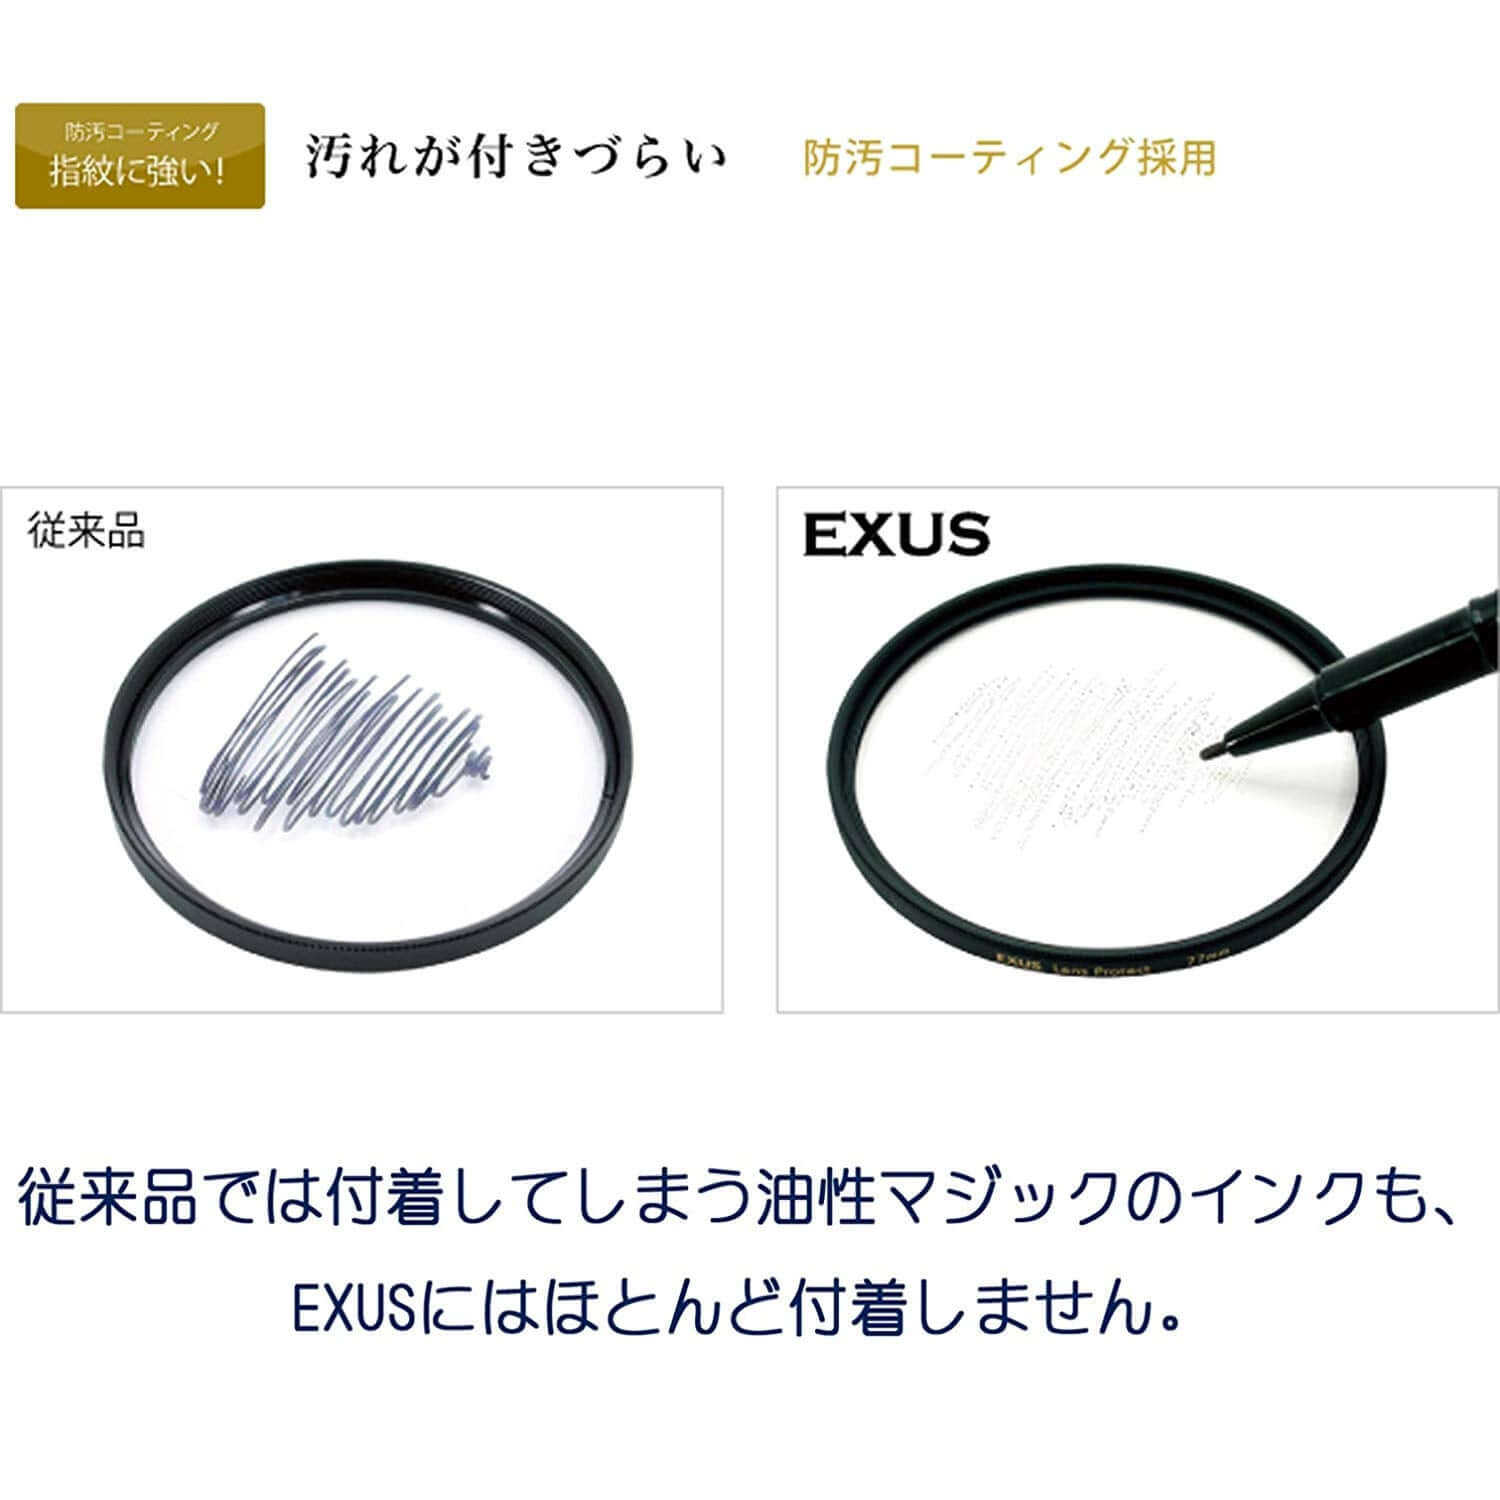 EXUS レンズプロテクト 62mm